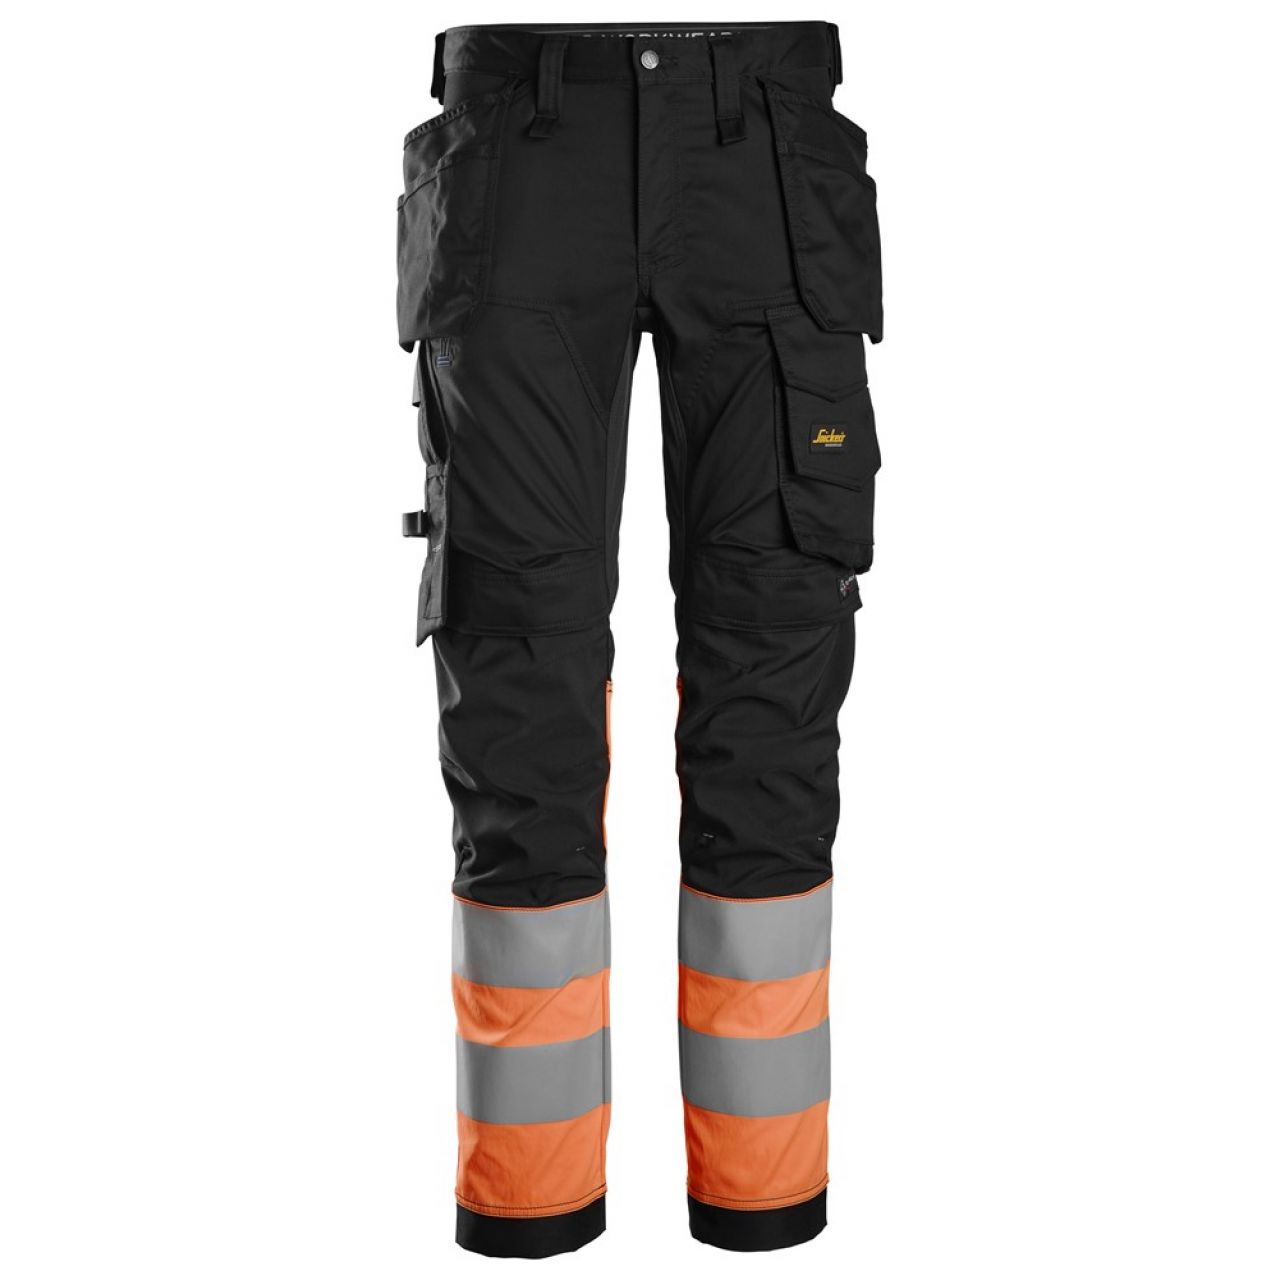 6234 Pantalones largos de trabajo elásticos de alta visibilidad clase 1 con bolsillos flotantes negro-naranja talla 152